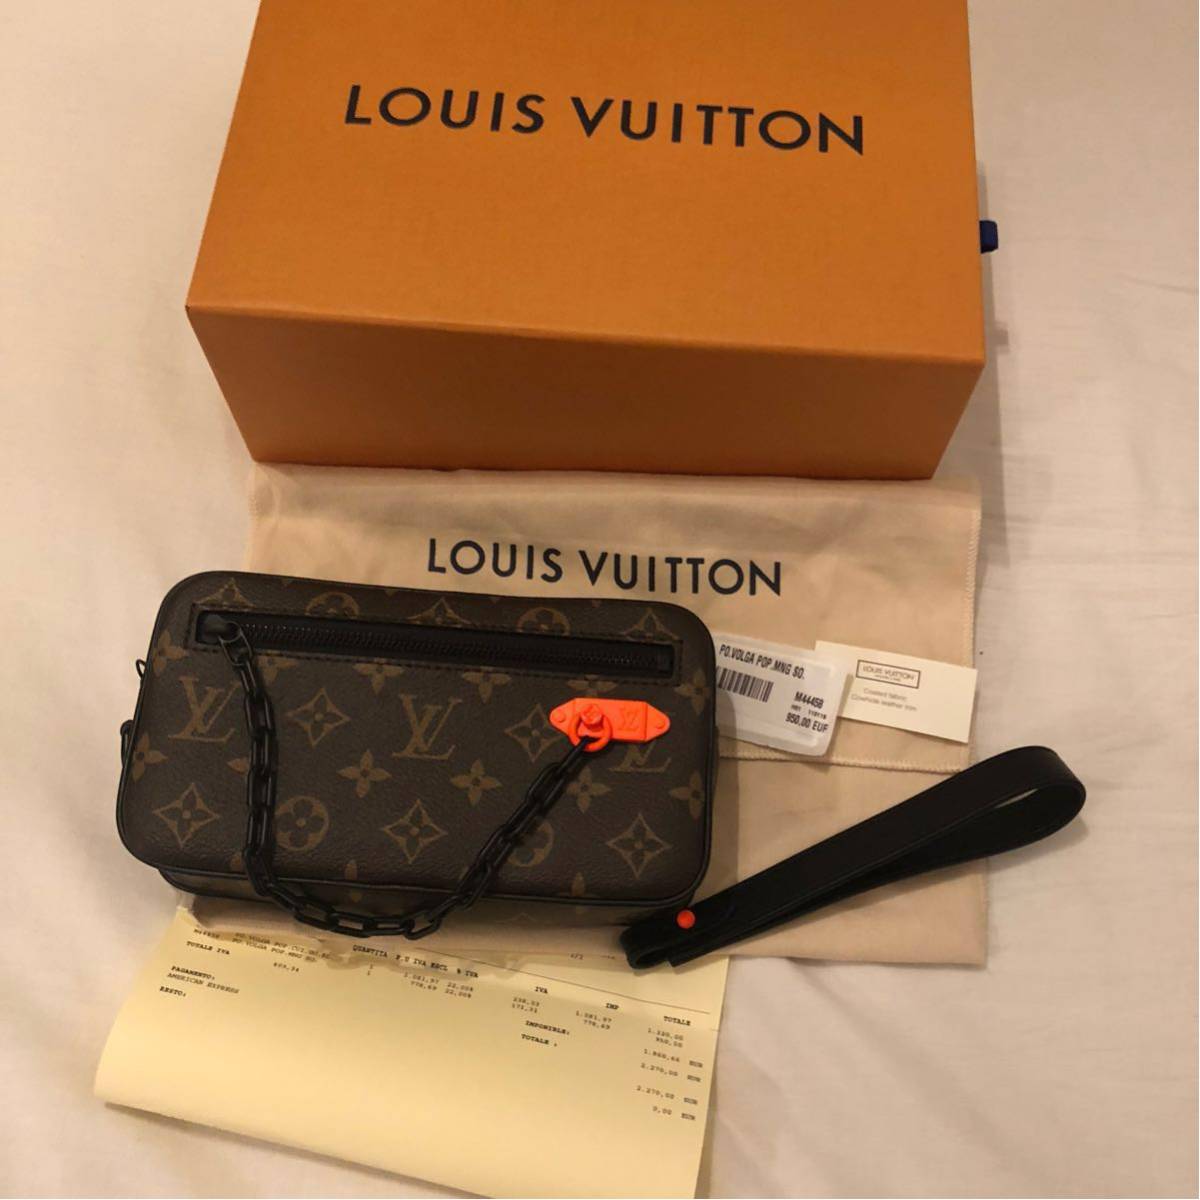 Sold at Auction: Louis Vuitton, Louis Vuitton Branded Pochette